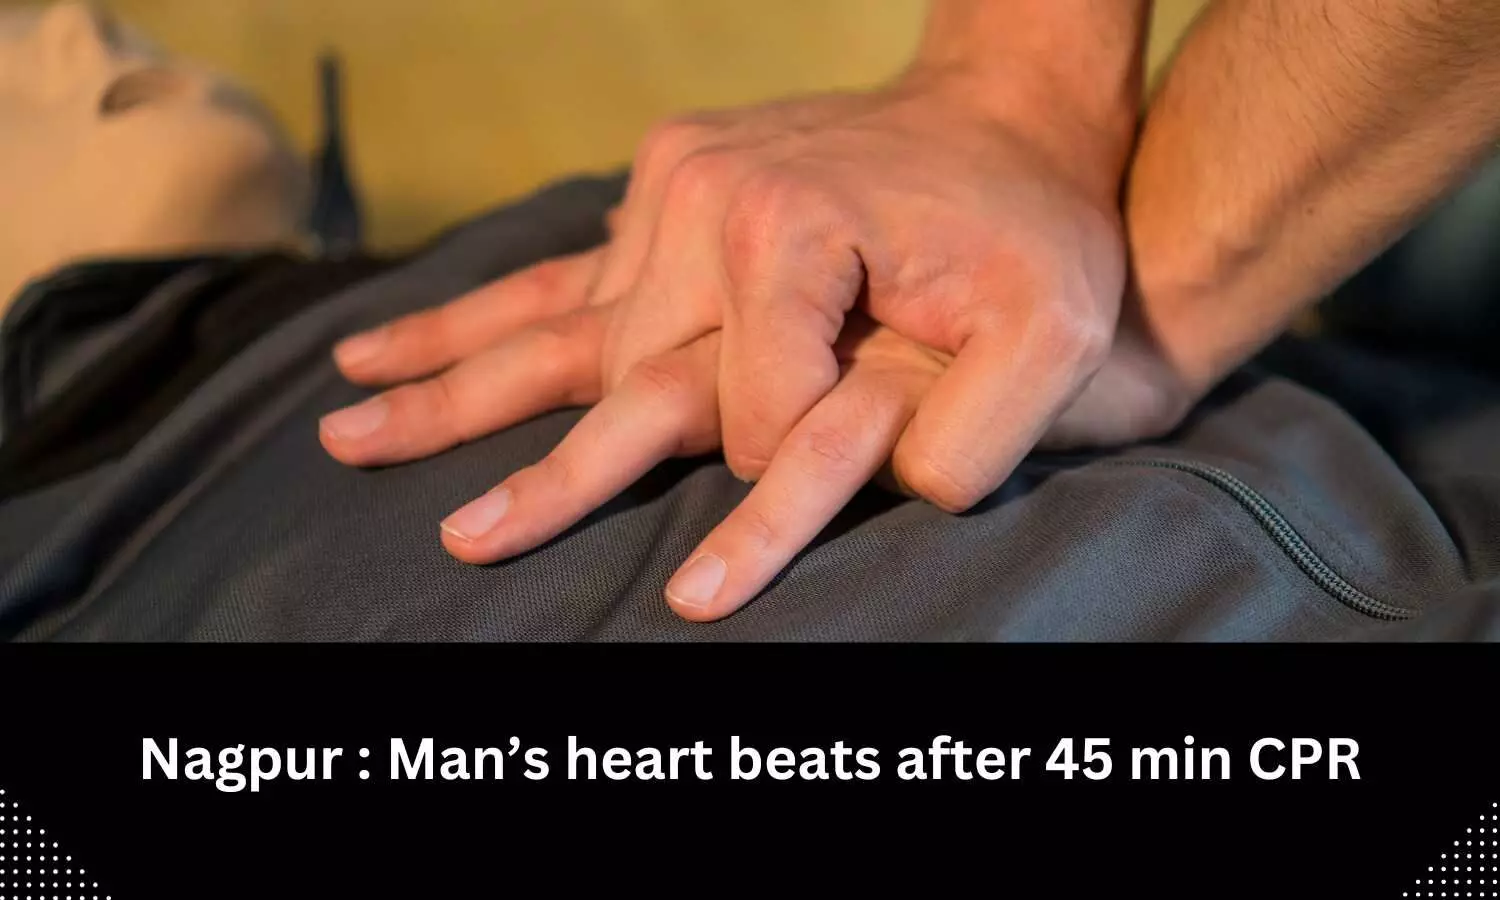 Nagpur: Man heart beats after 45 min CPR